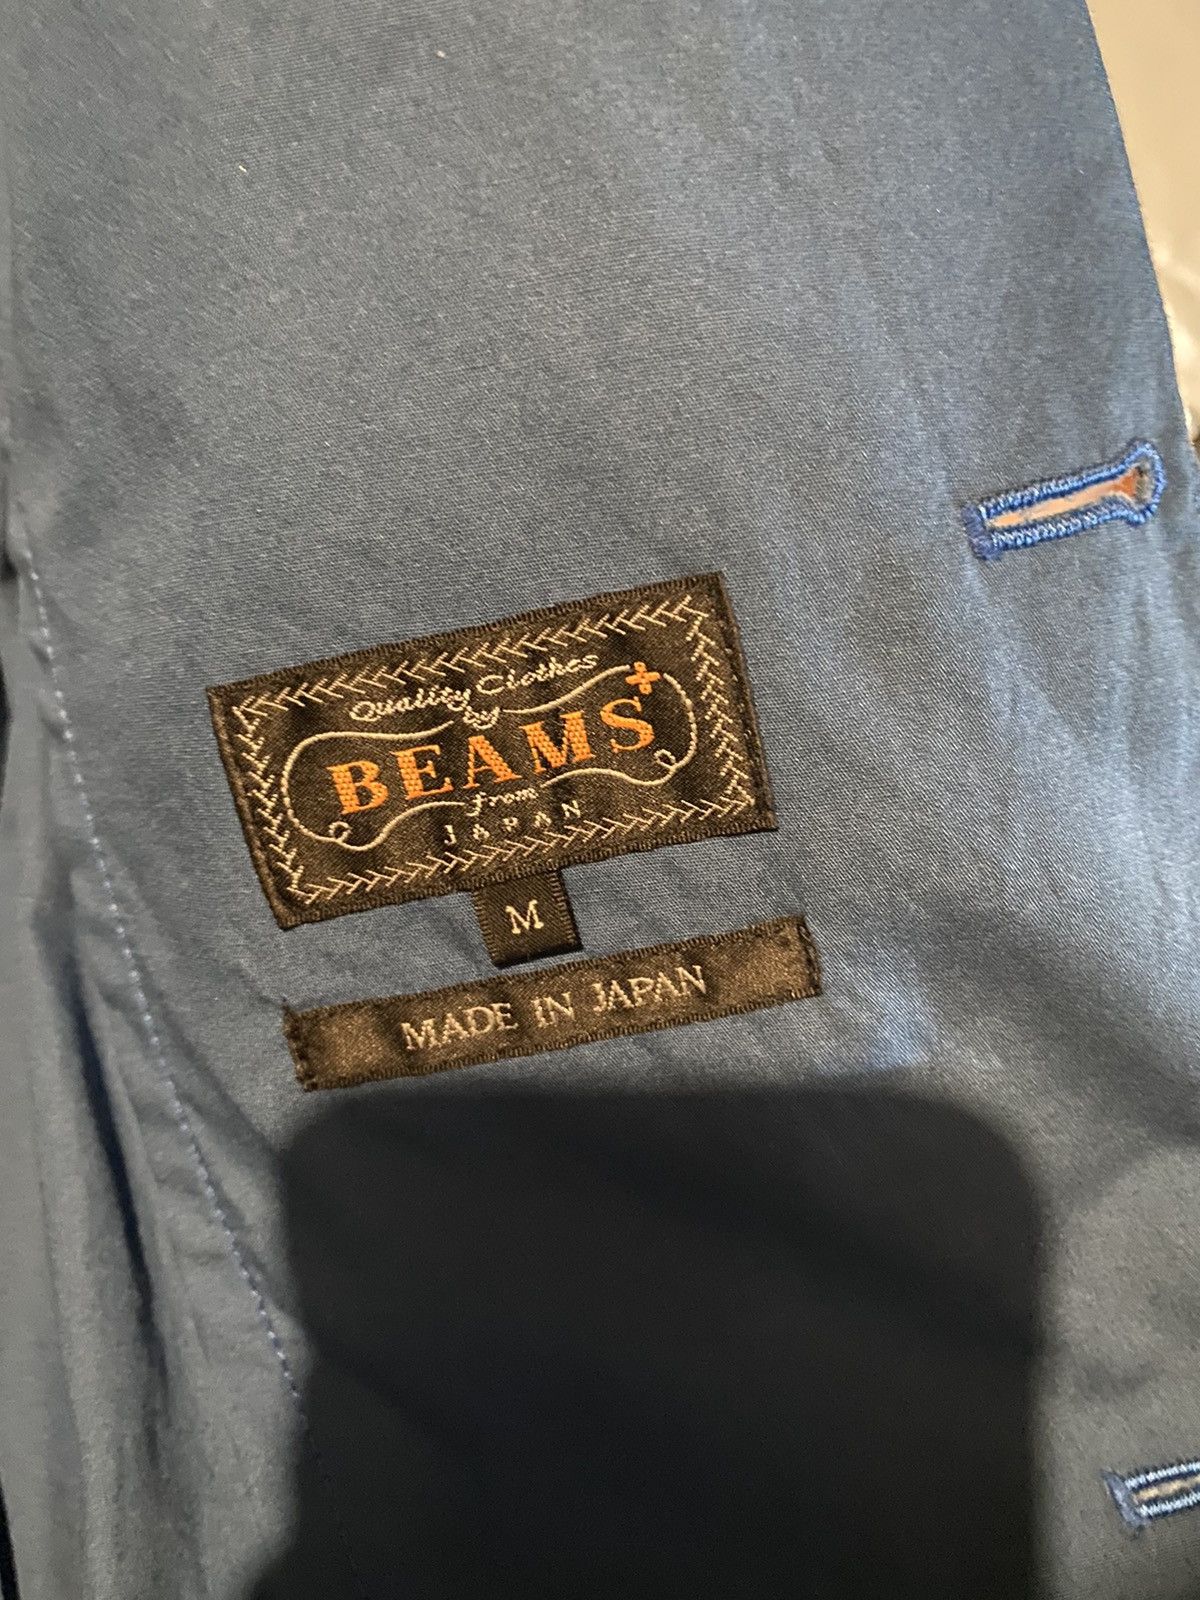 Beams Plus Unstructured Cotton Blazer Size 38R - 5 Thumbnail